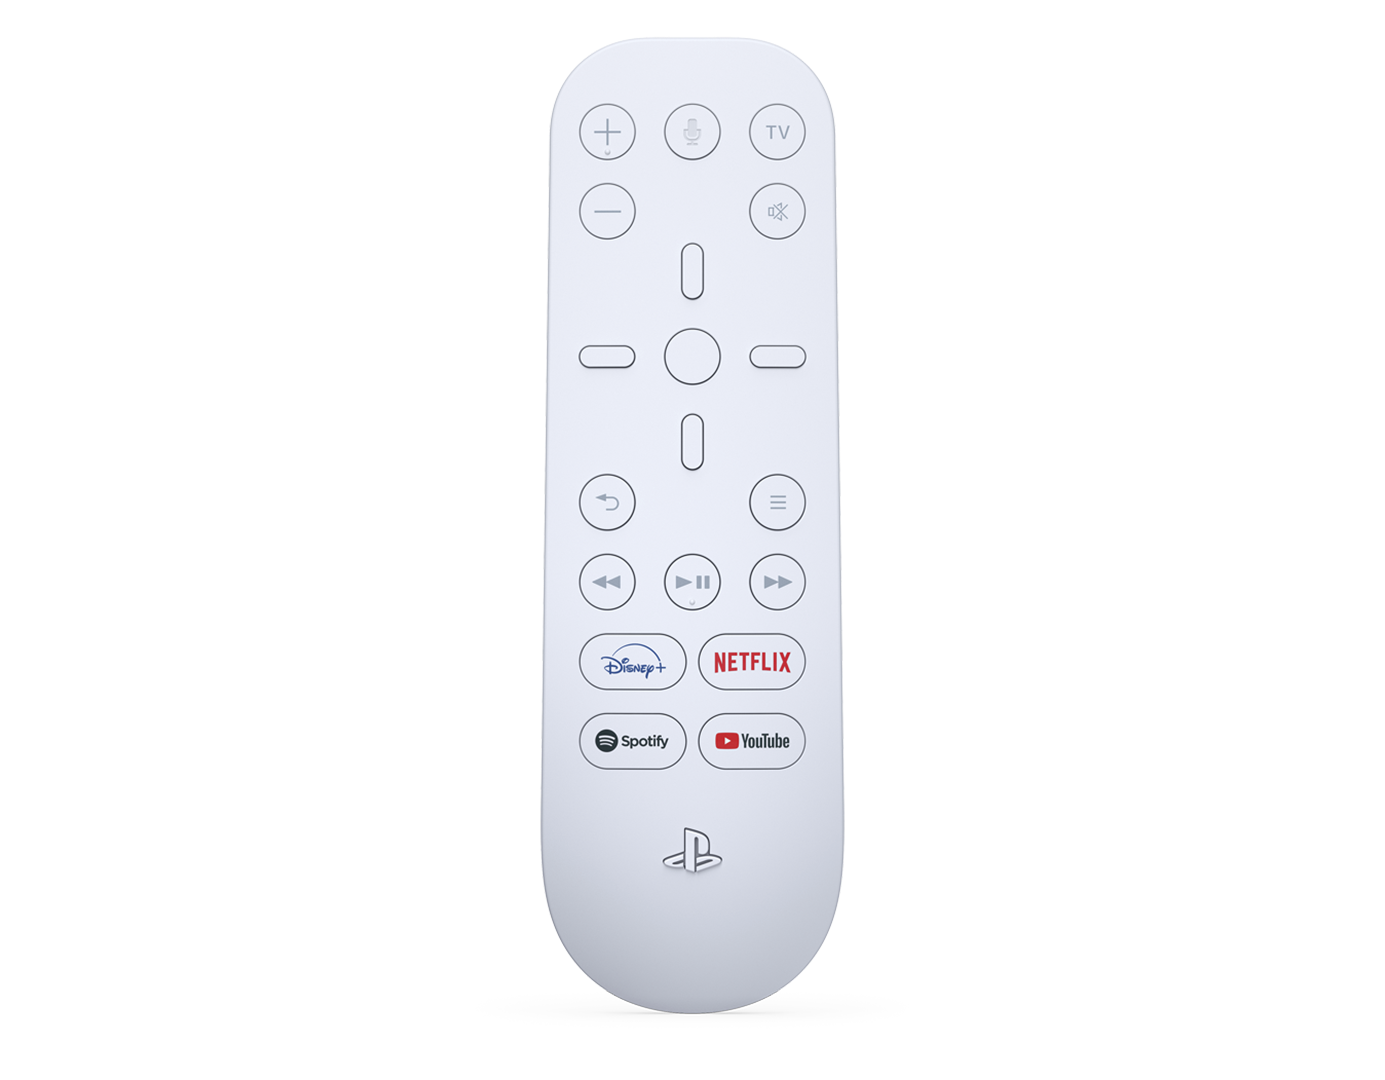 PS5 Remote